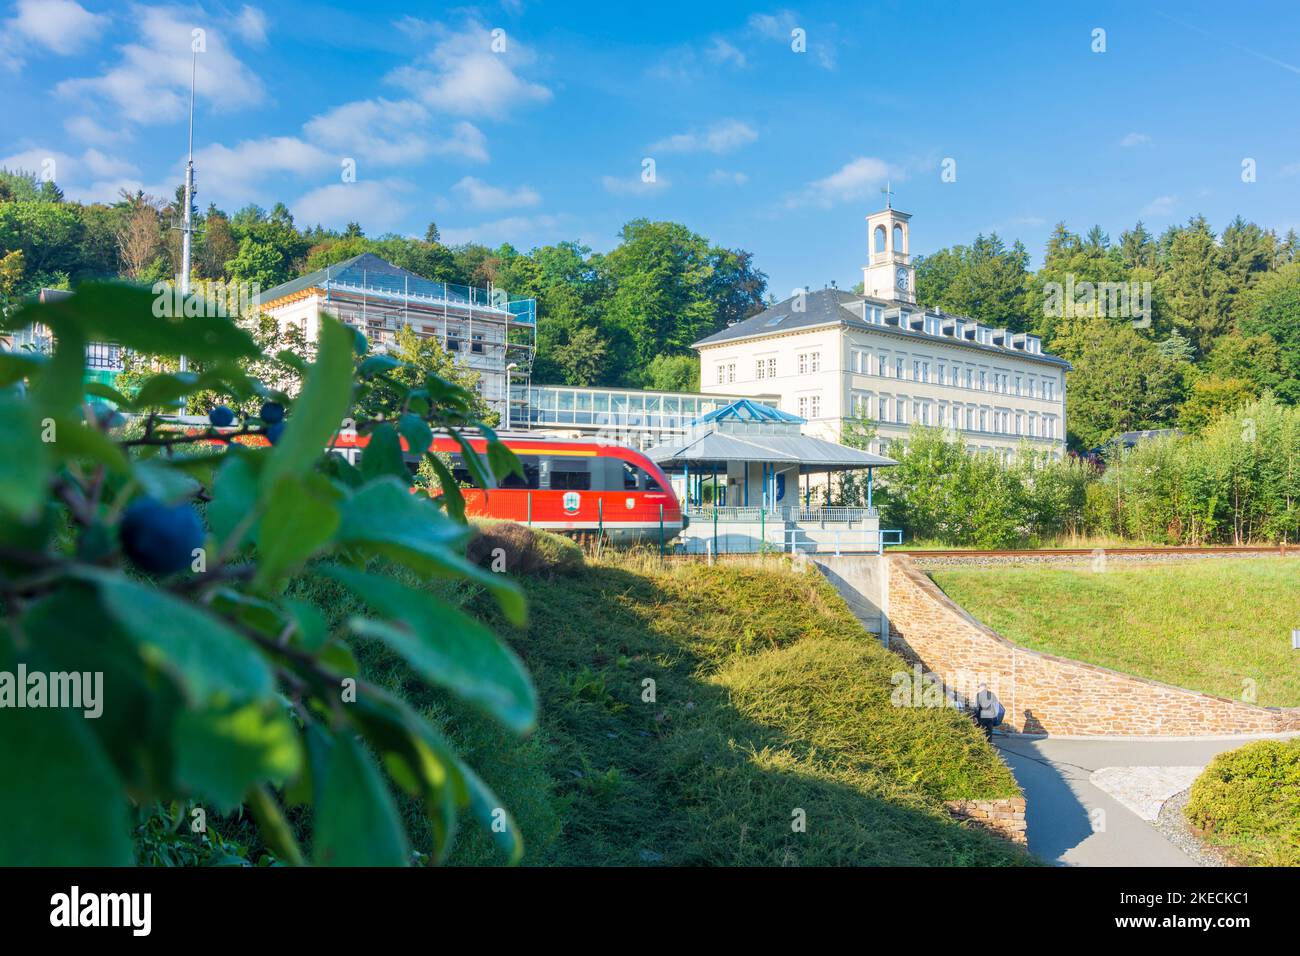 Thermalbad Wiesenbad, treno locale di Zschopautalbahn, Badehaus (bagno) delle terme di Erzgebirge, Monti ore, Sachsen, Sassonia, Germania Foto Stock